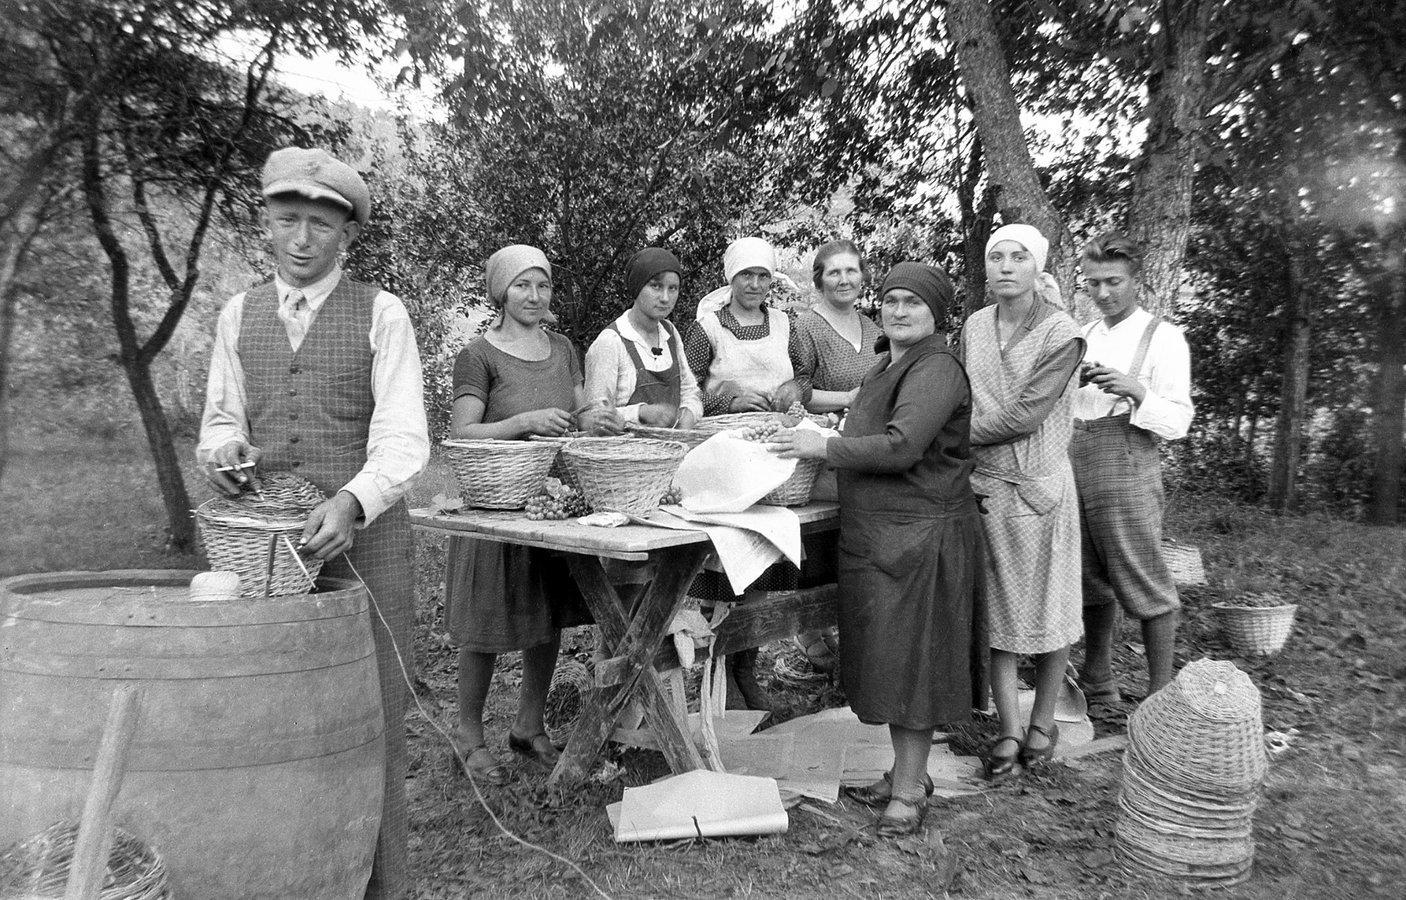 Під час збору винограду у селі Оклі Гедь, 1938 р. Török Sándor. Архів Török Éva